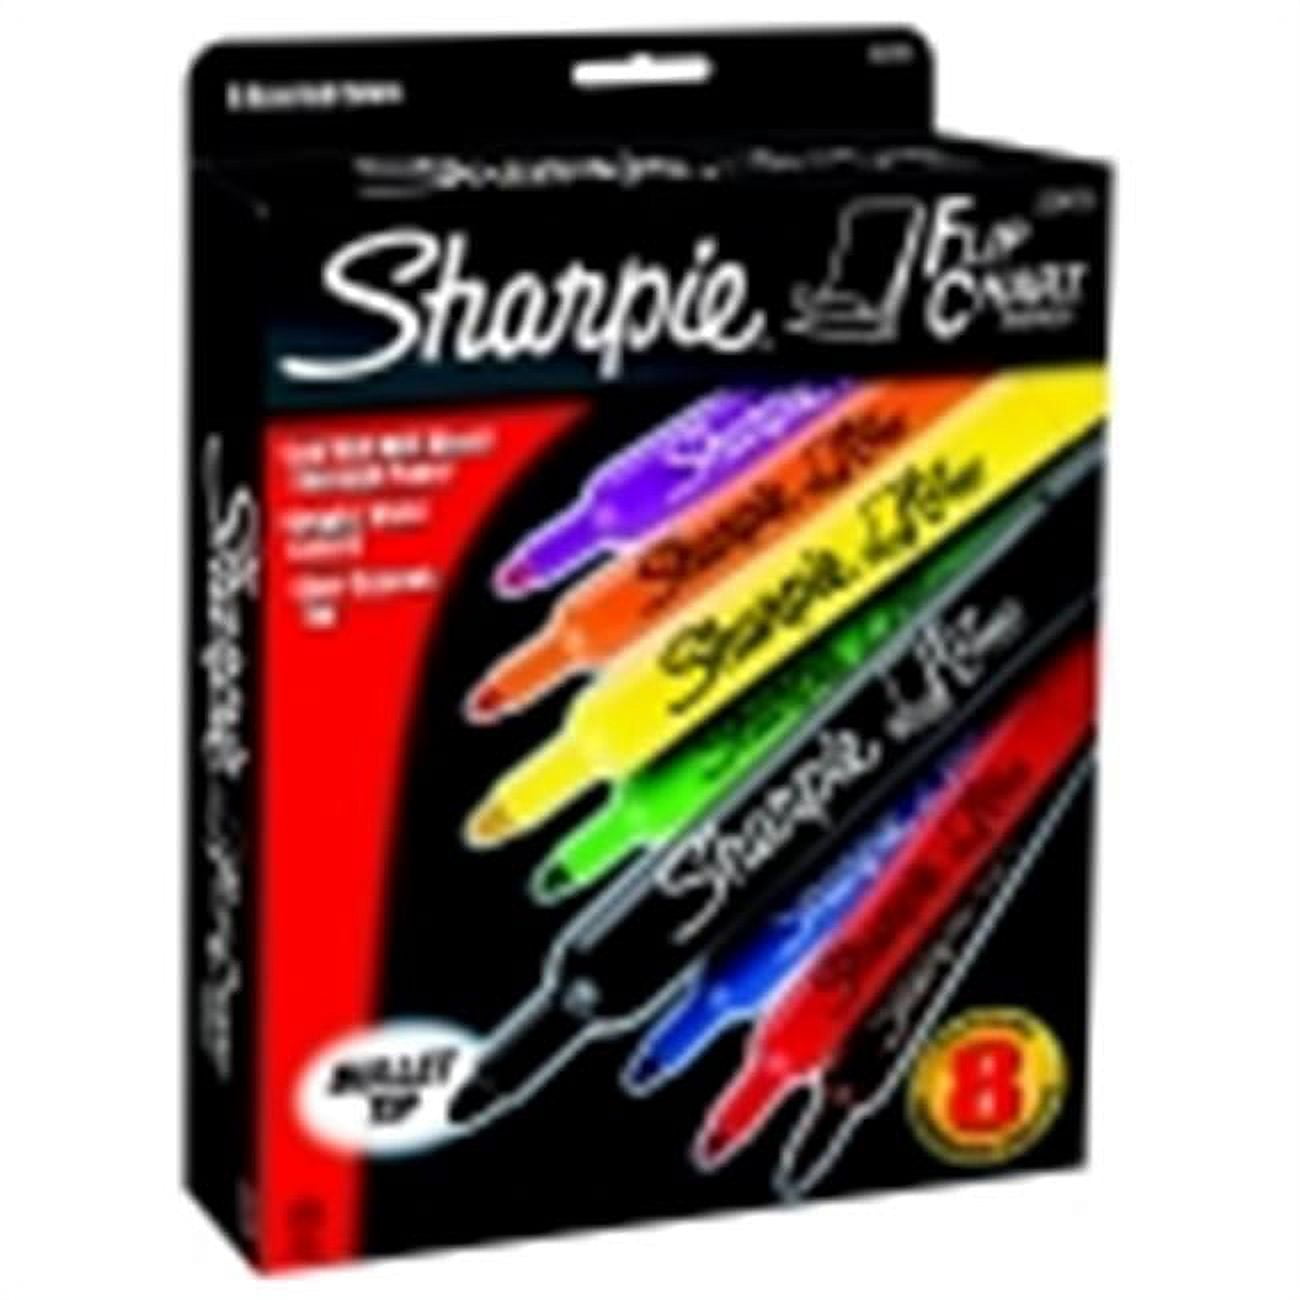 Sharpie 22474 Flip Chart Markers Bullet Tip Four Colors 4/Set